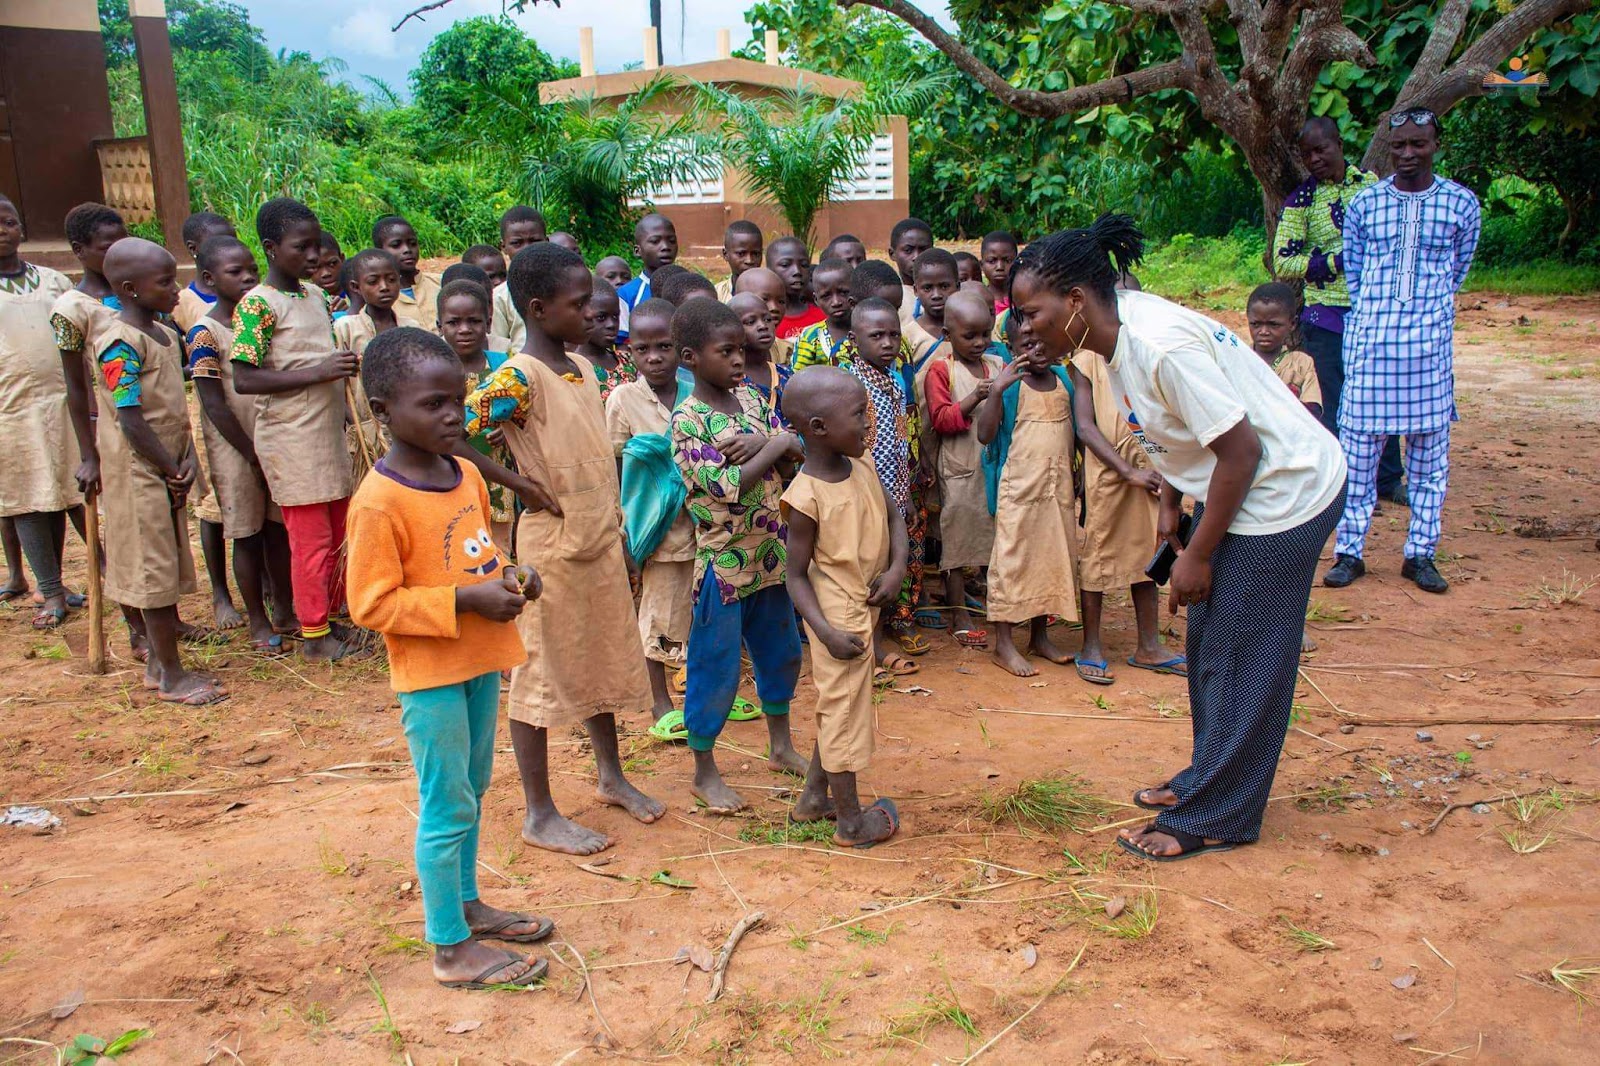 School children in Benin, Africa